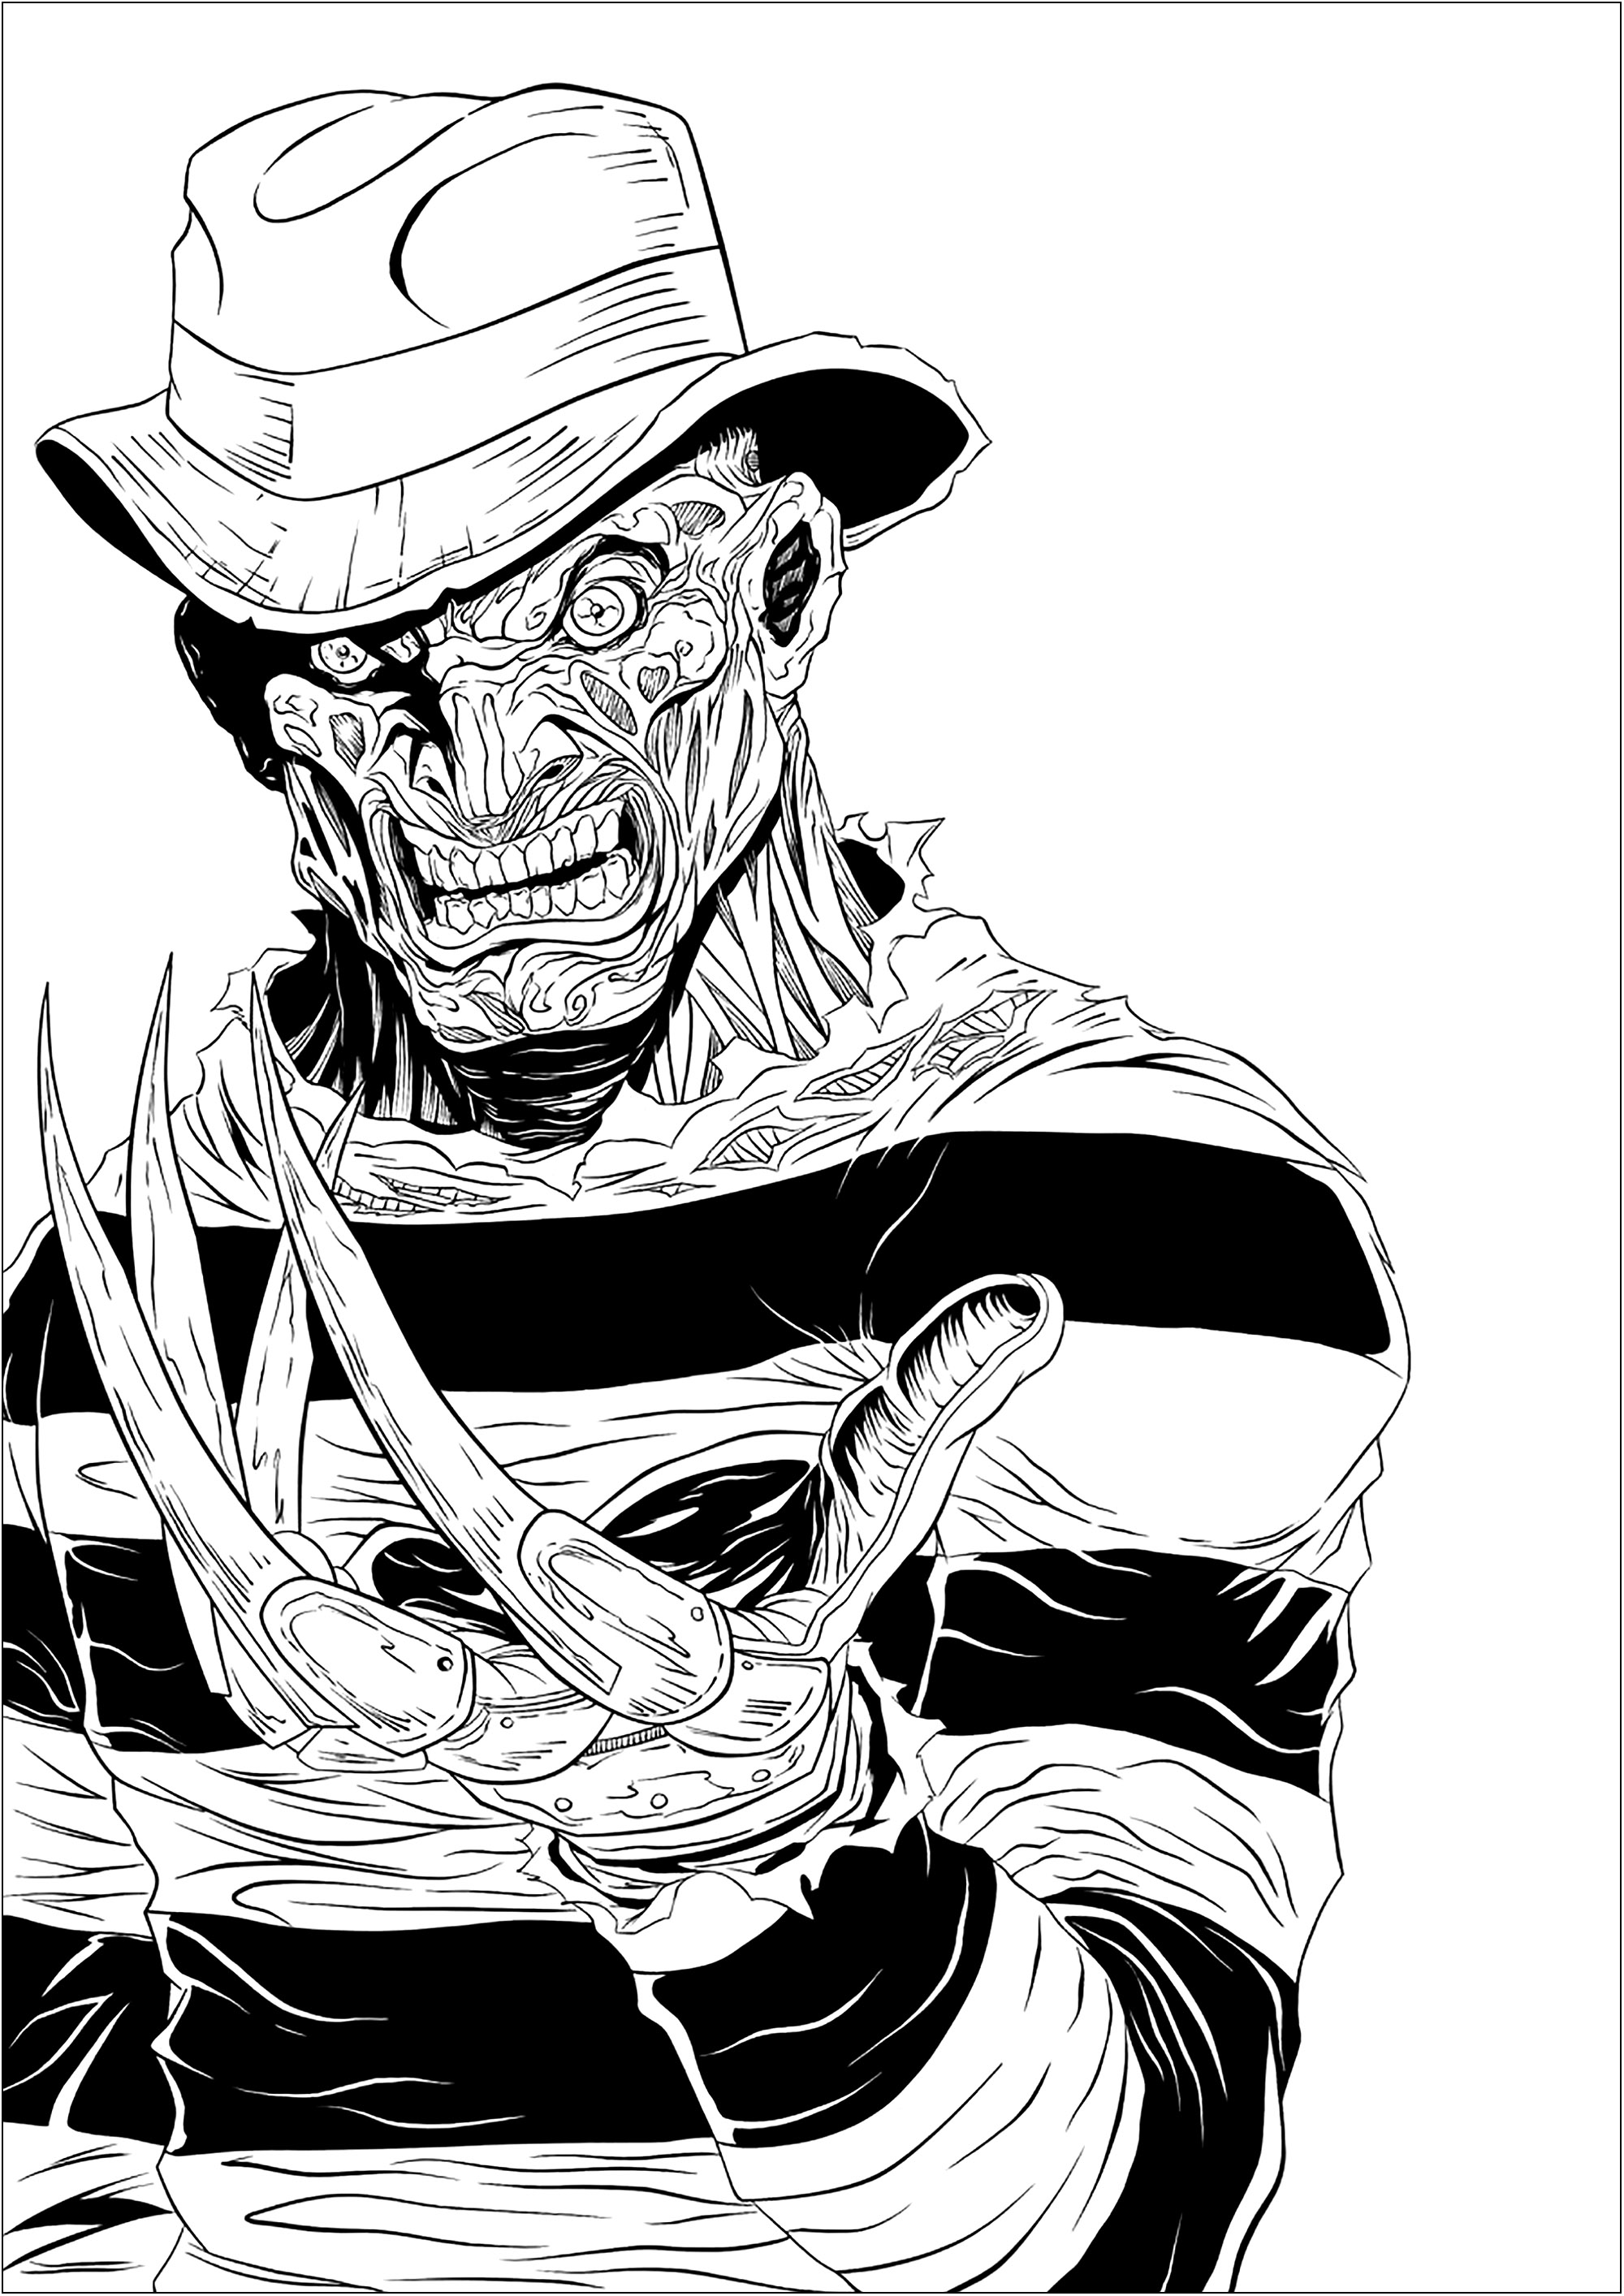 O assustador Freddy Krueger e as suas garras afiadas